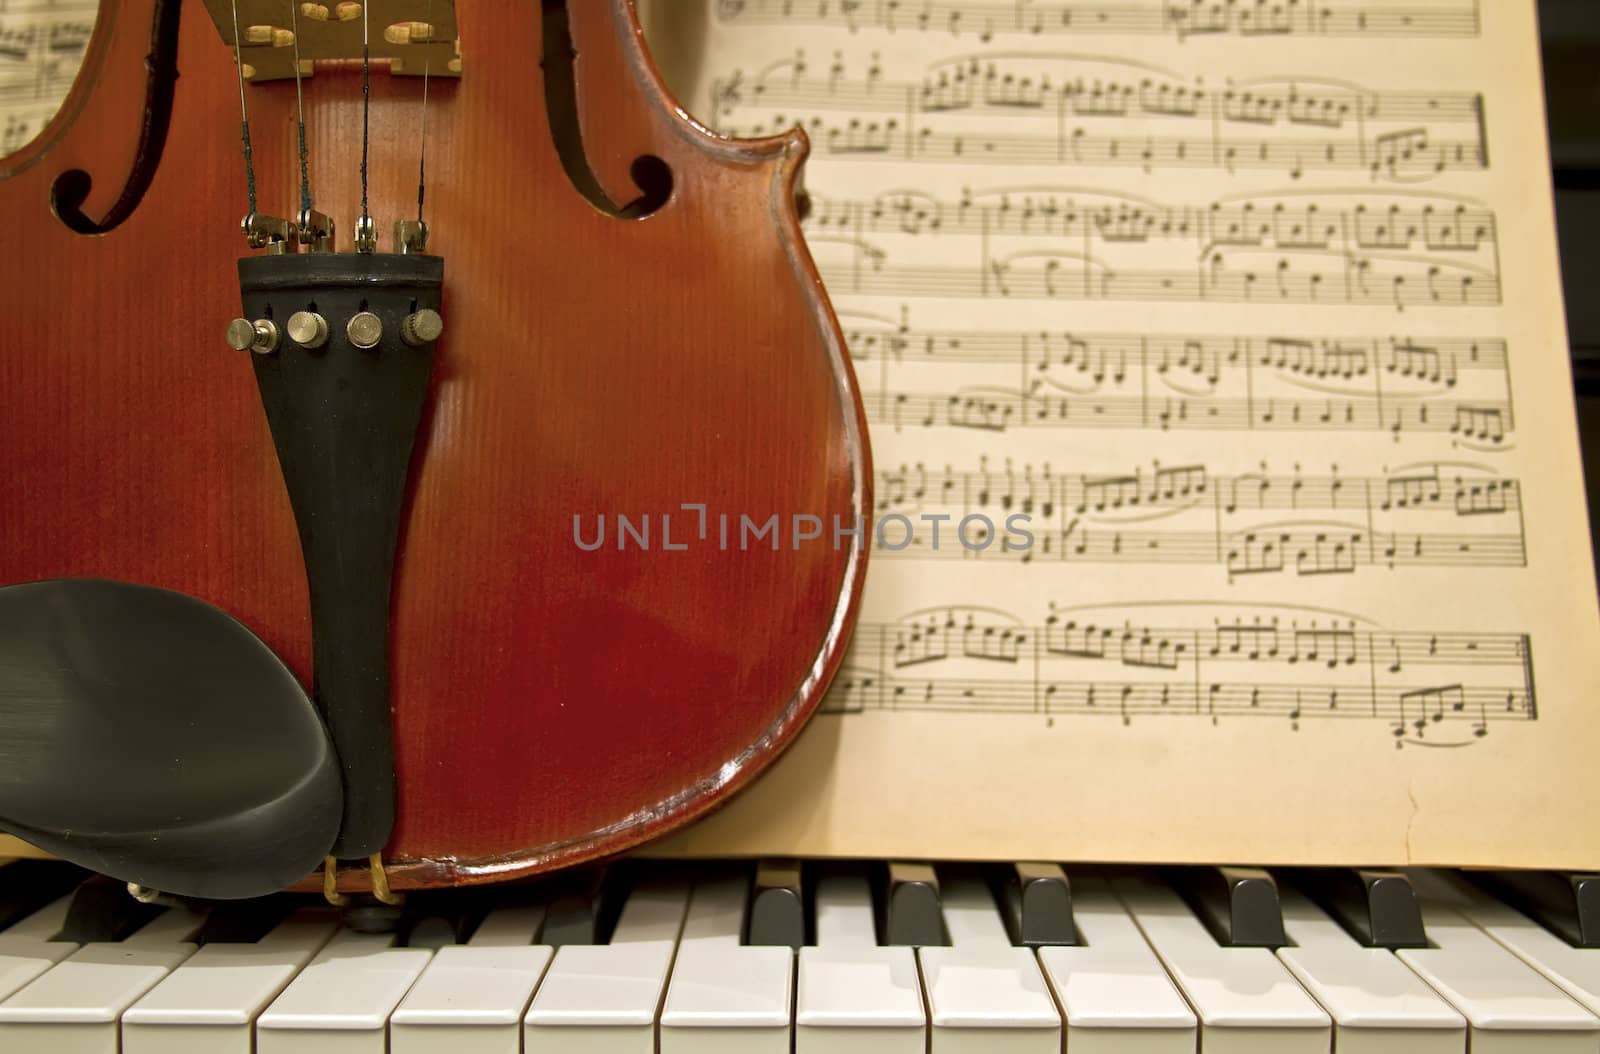 Violin Piano Keys and Music Sheets by Davidgn